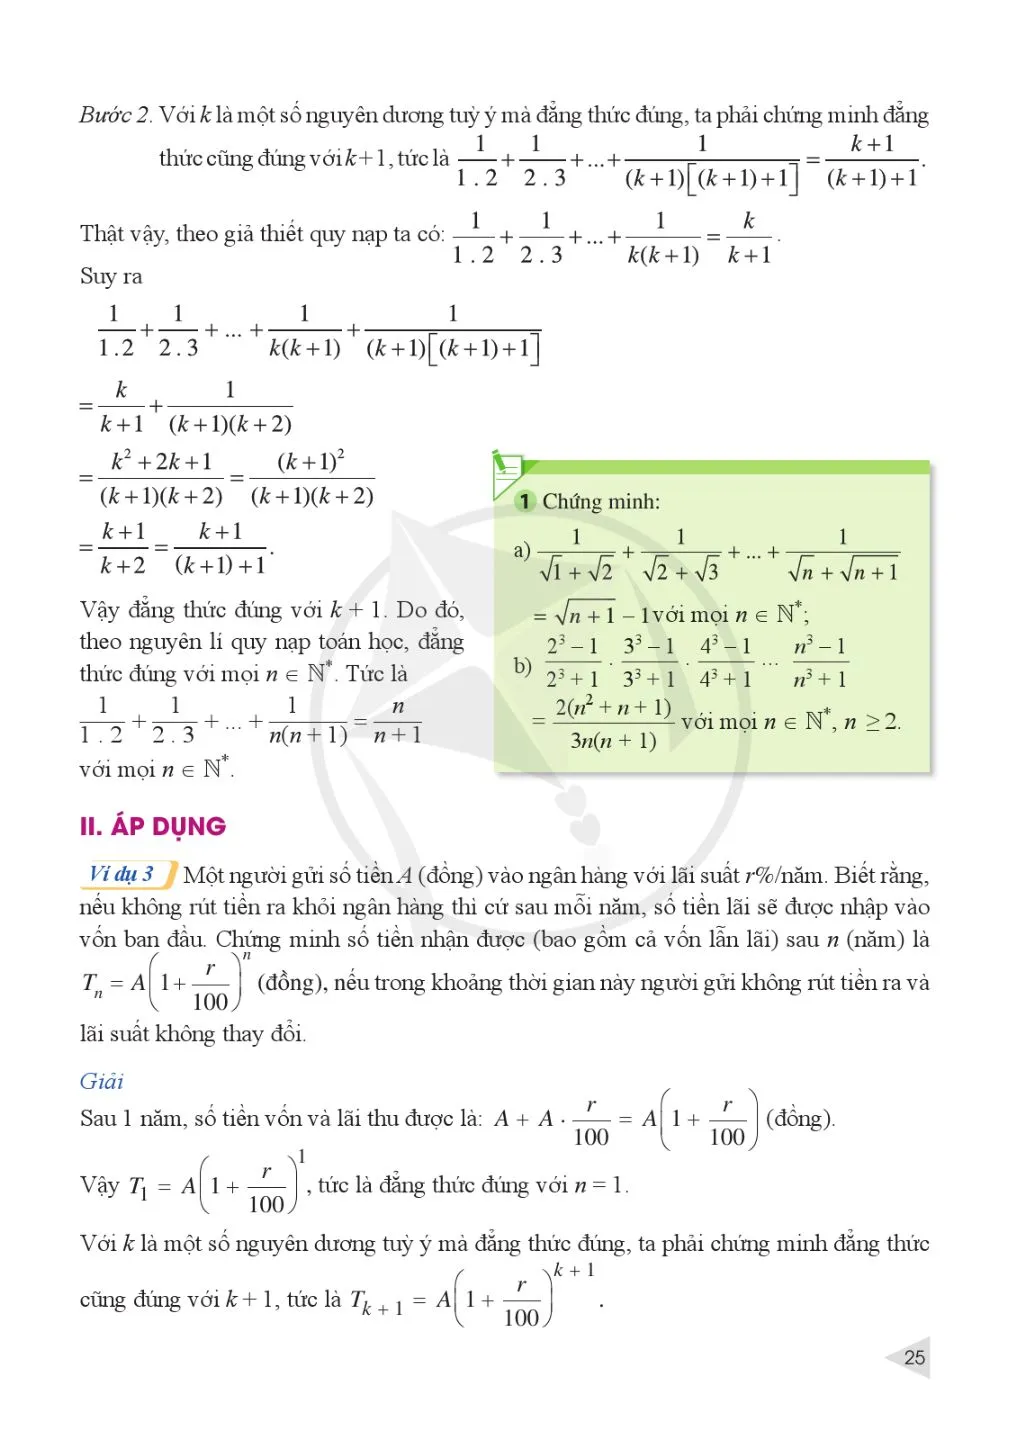 Bài 1. Phương pháp quy nạp toán học